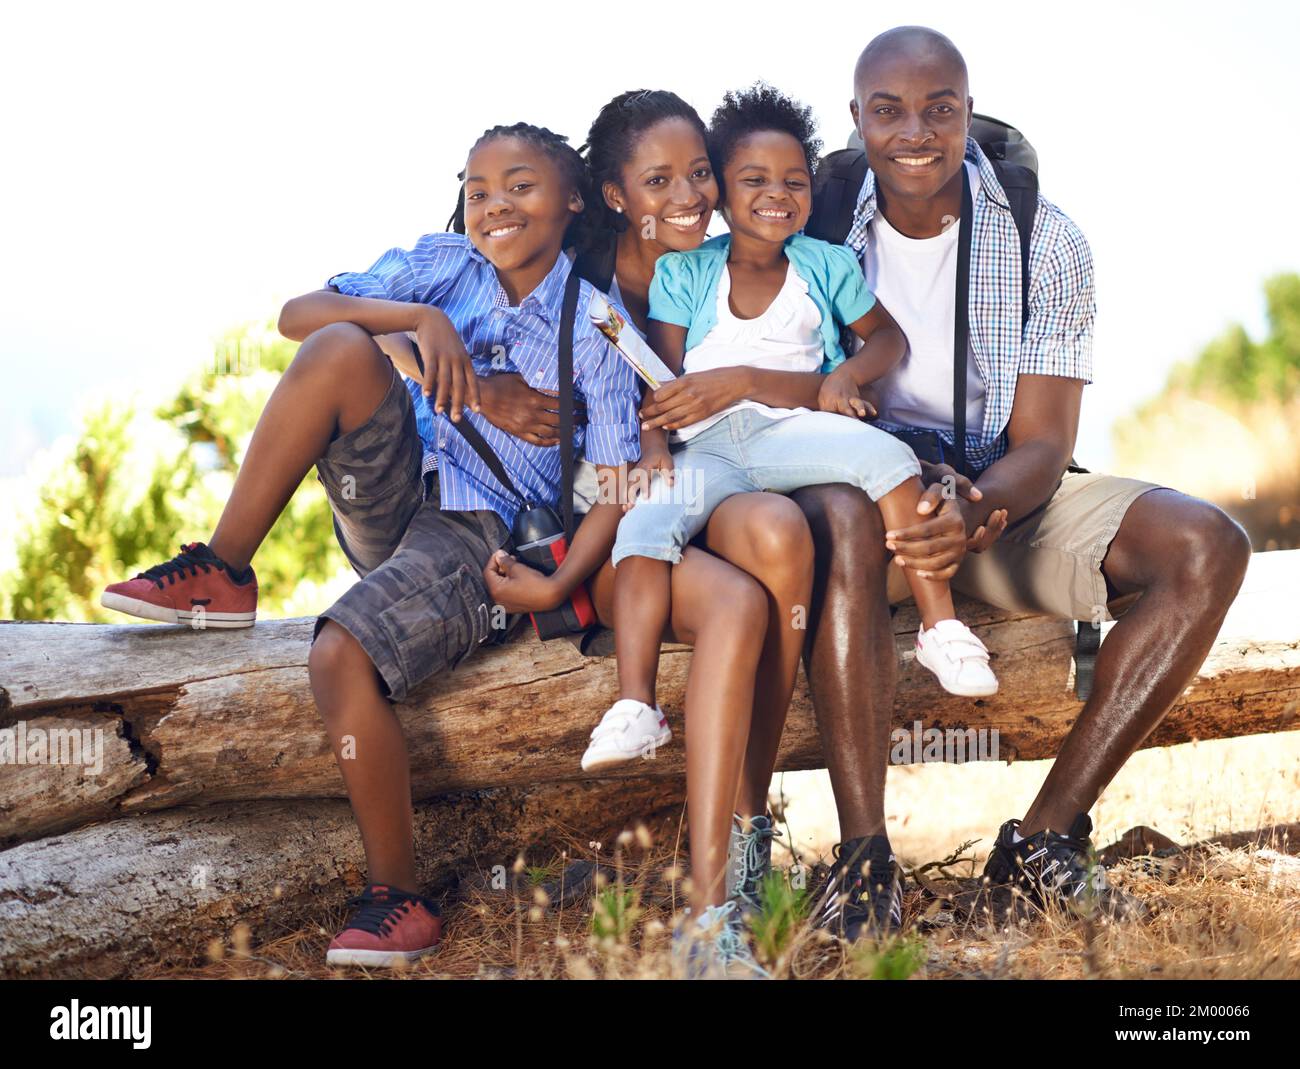 Ils adorent faire une bonne randonnée ensemble. Portrait d'une famille heureuse assise sur une bûche pendant une randonnée ensemble. Banque D'Images